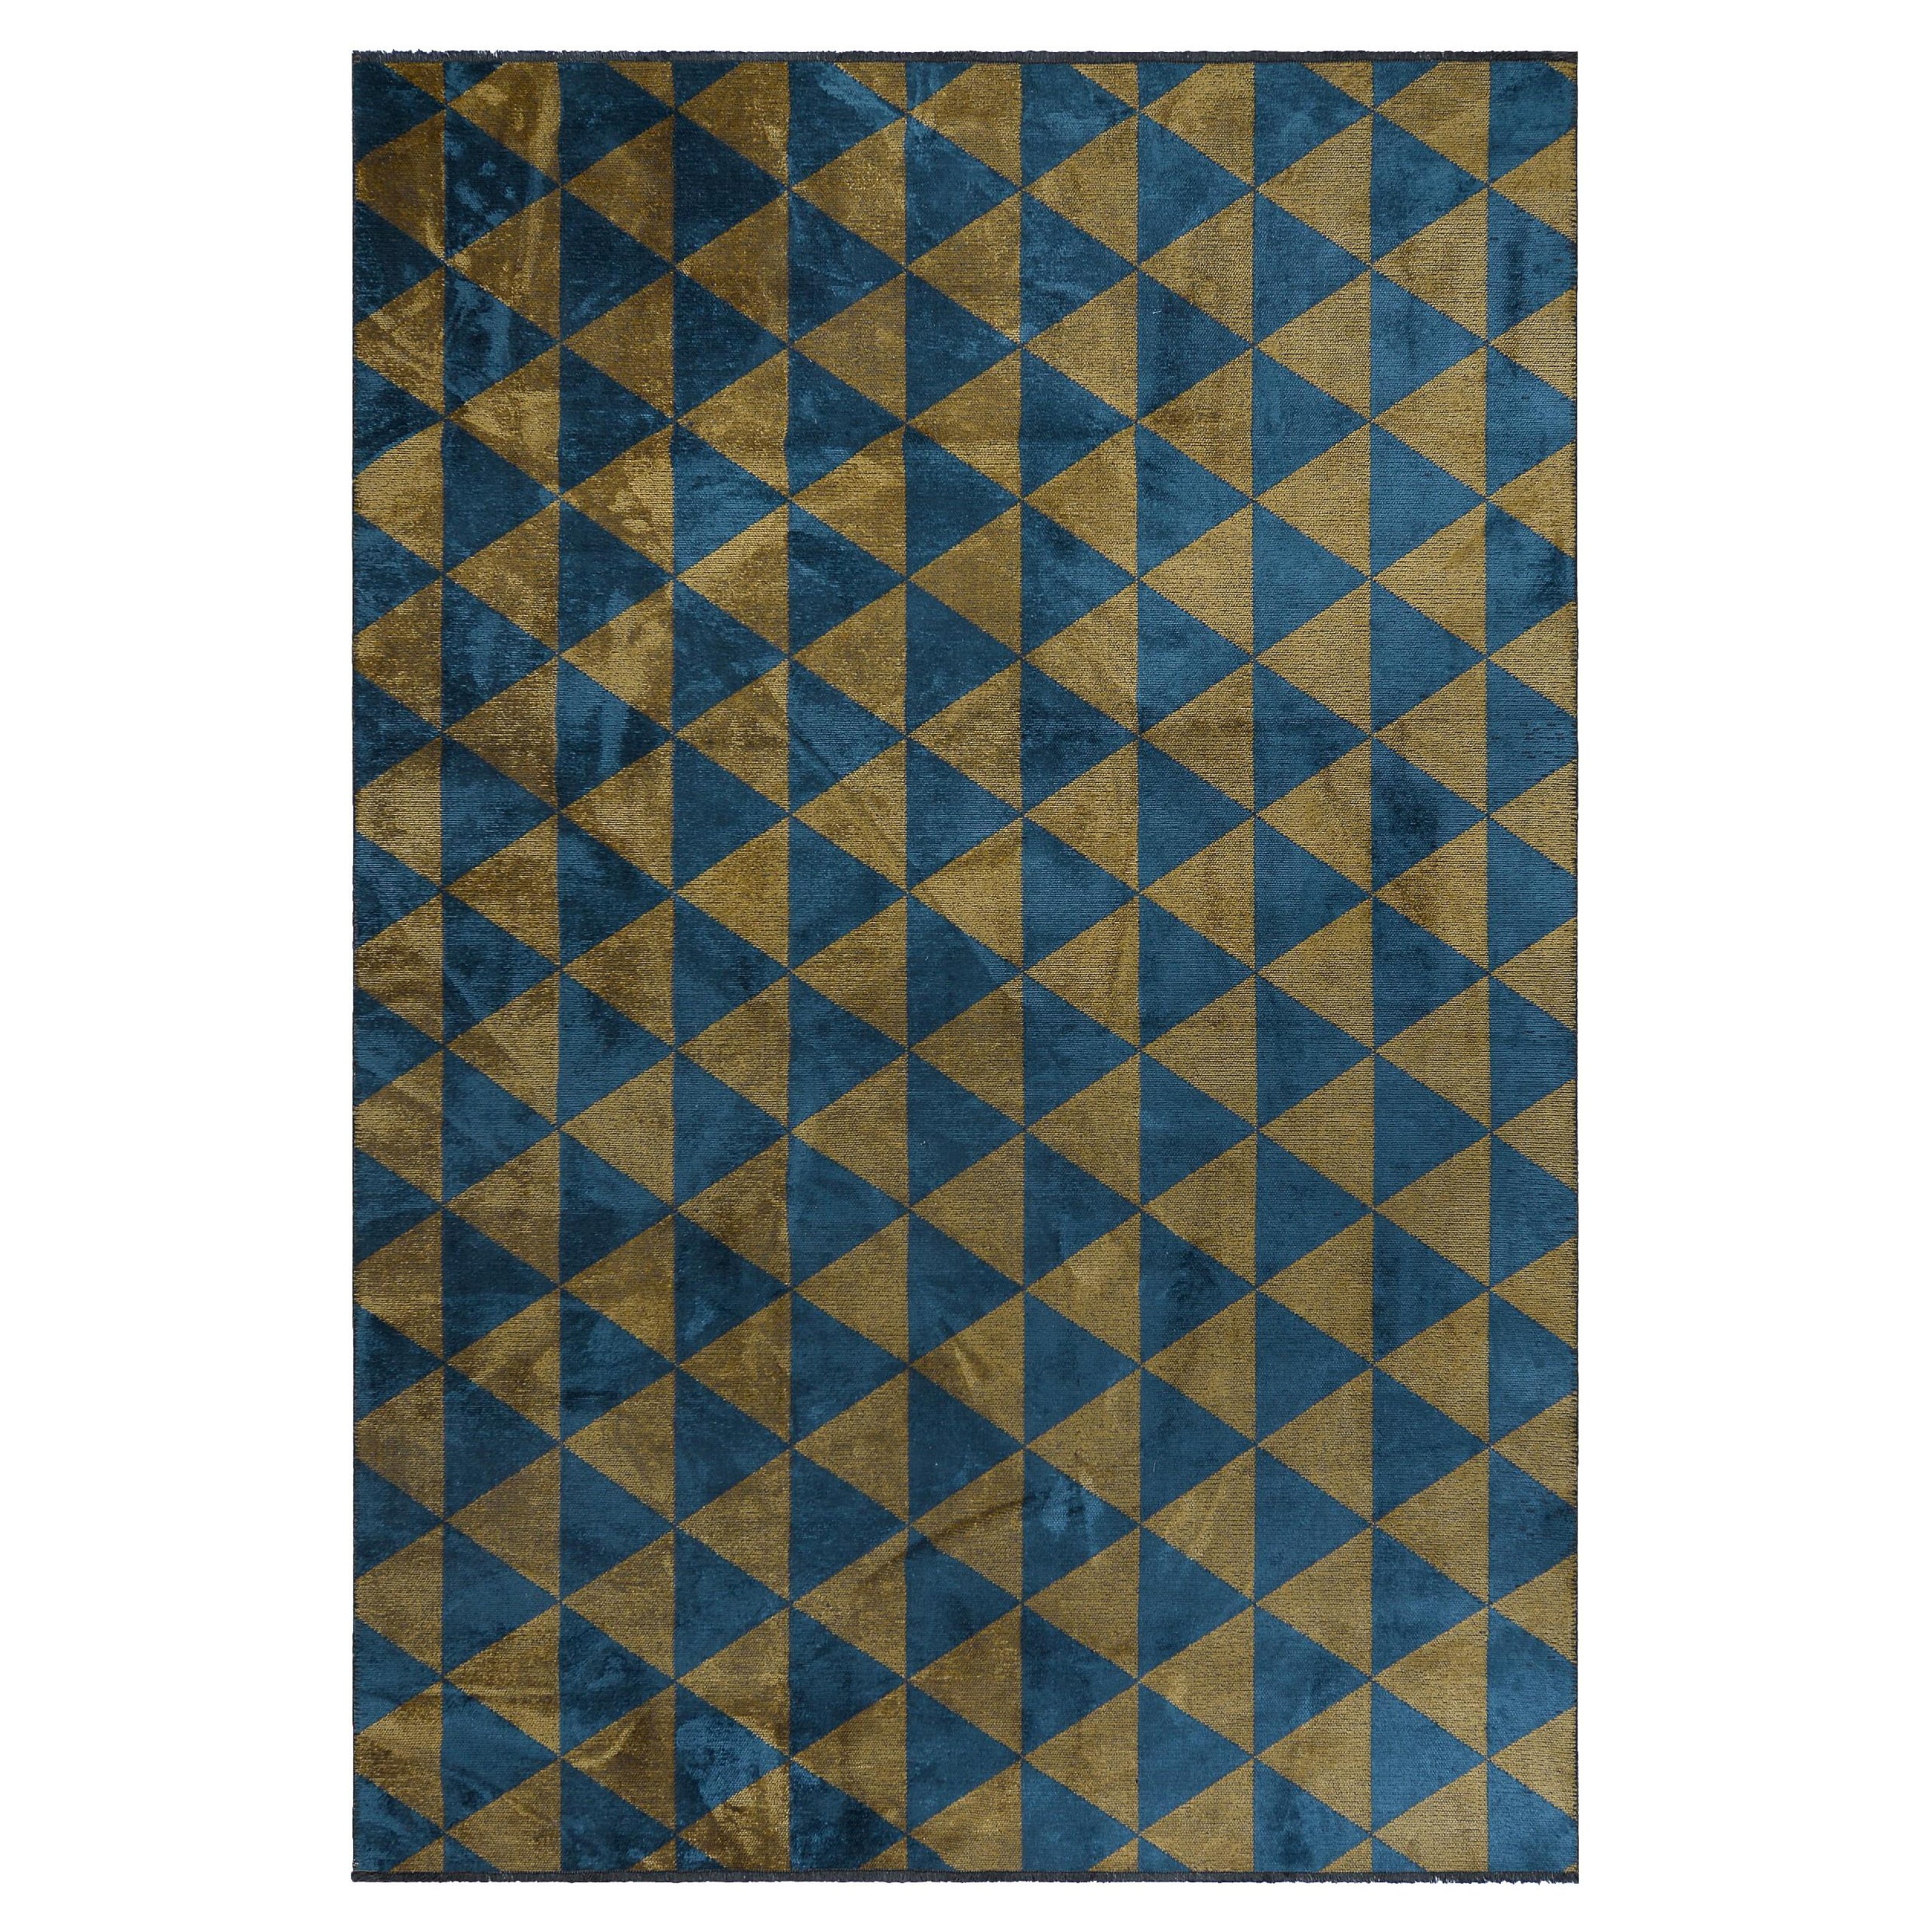 En vente :  (Bleu) Tapis de sol contemporain géométrique de luxe